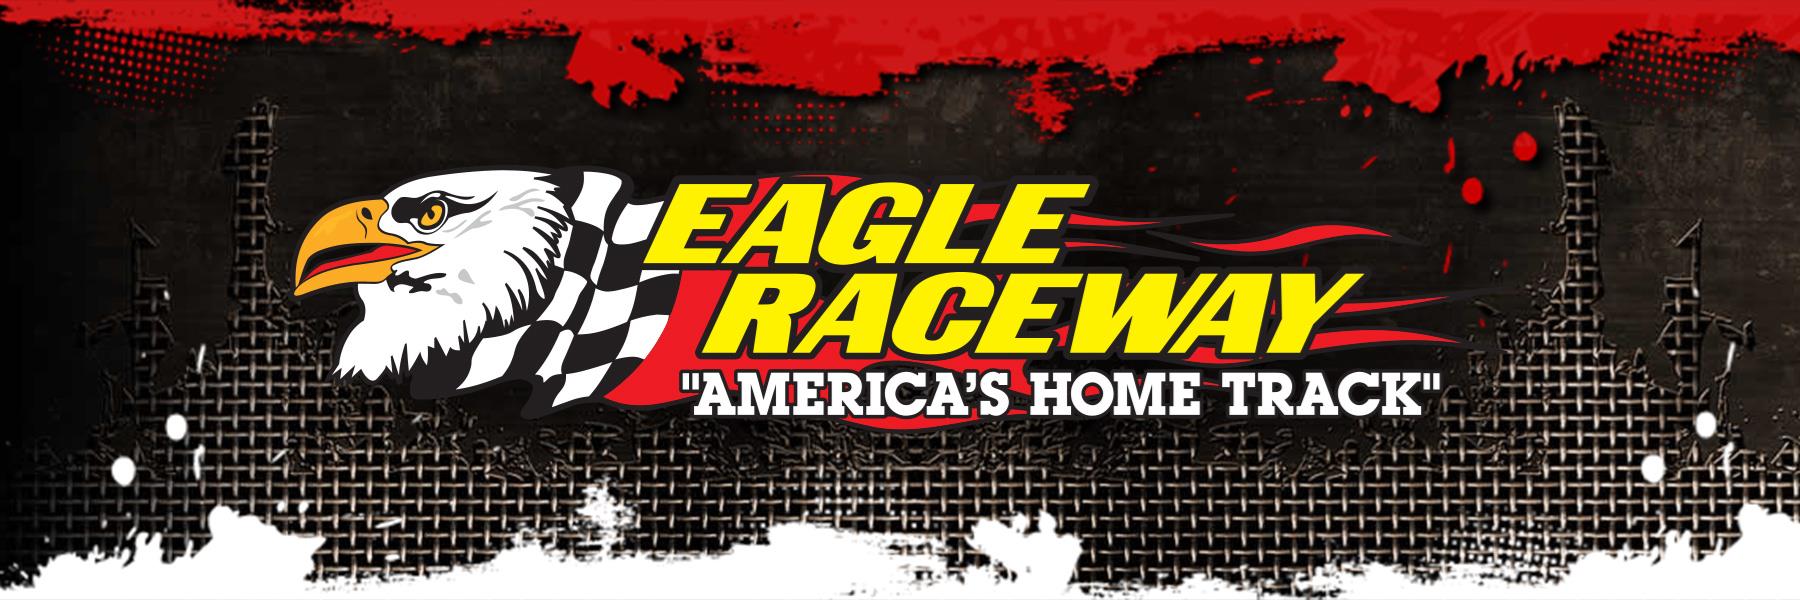 7/27/2013 - Eagle Raceway